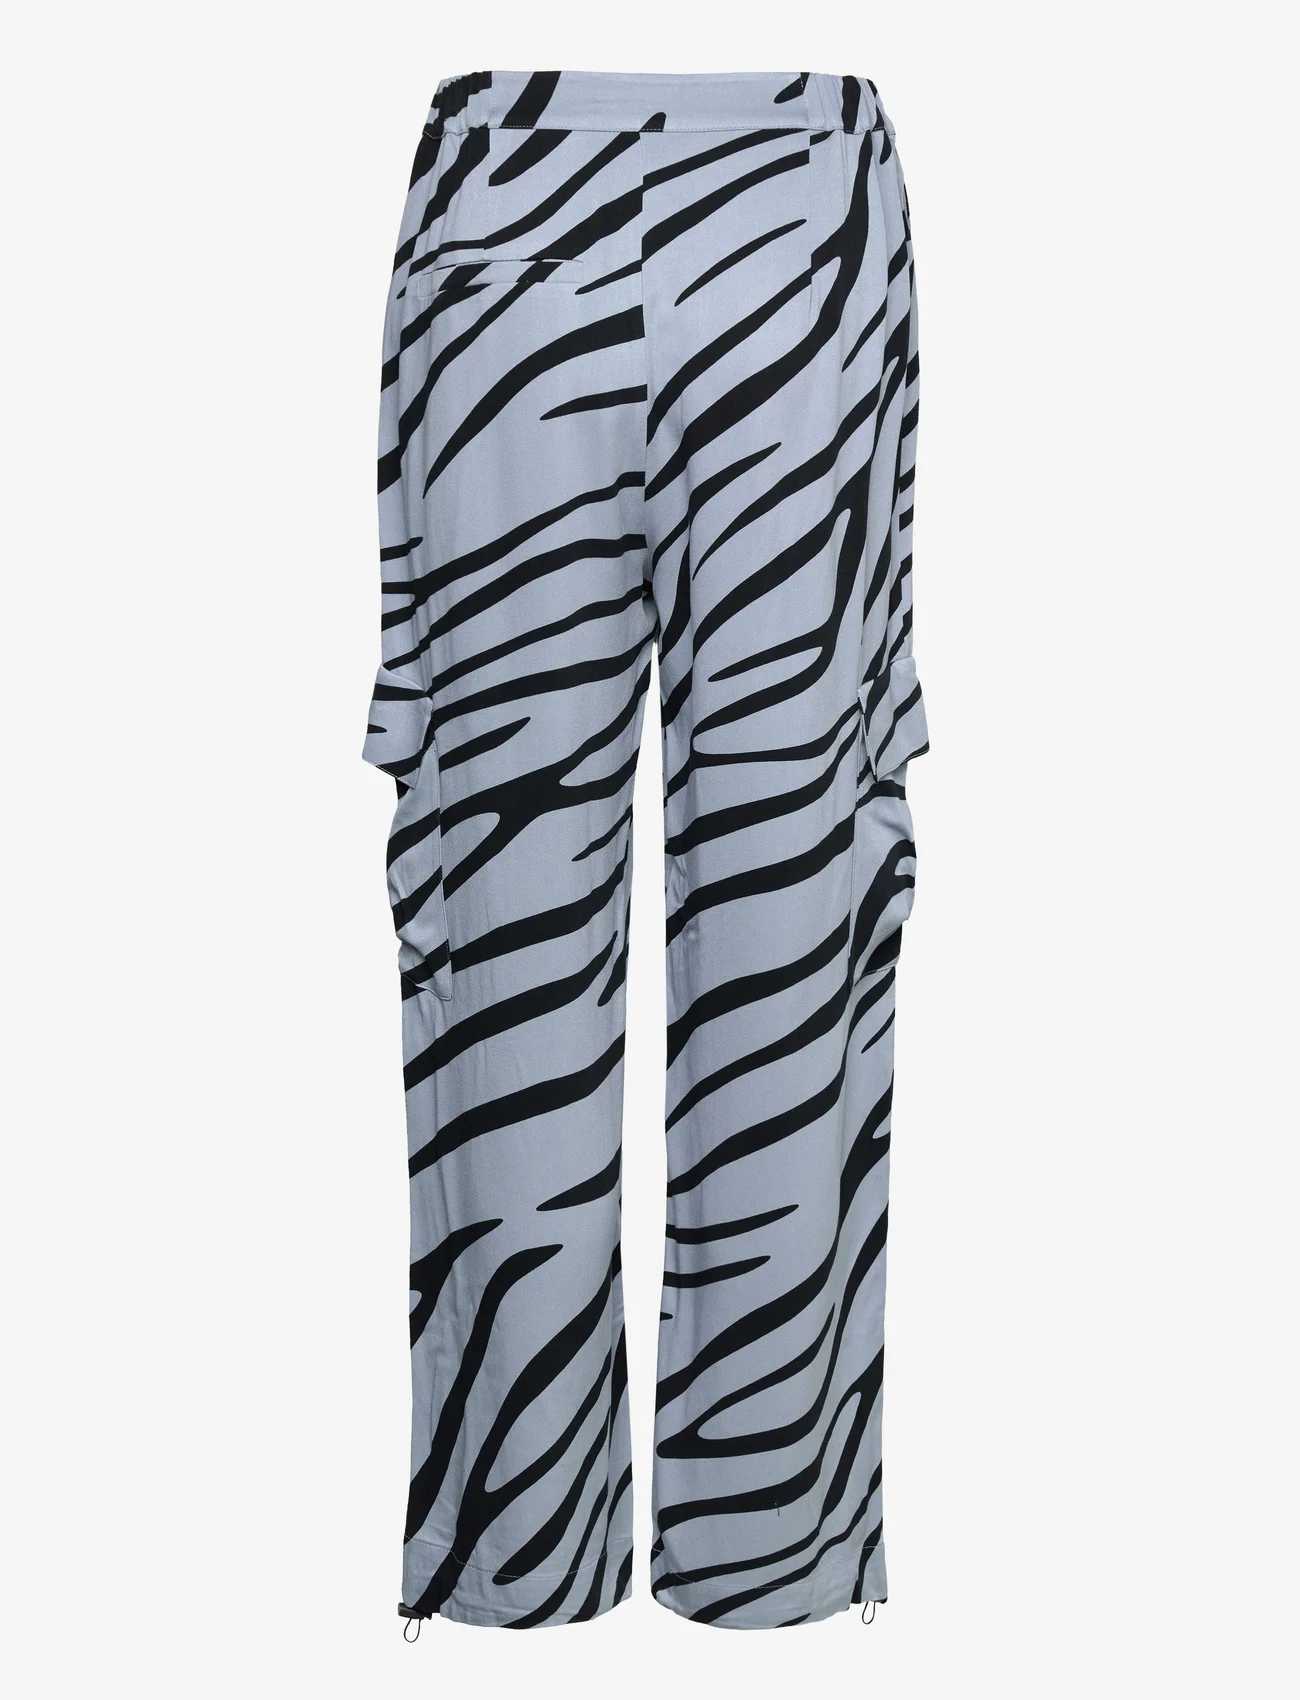 NORR - Tikka pants - cargobroeken - zebra print - 1